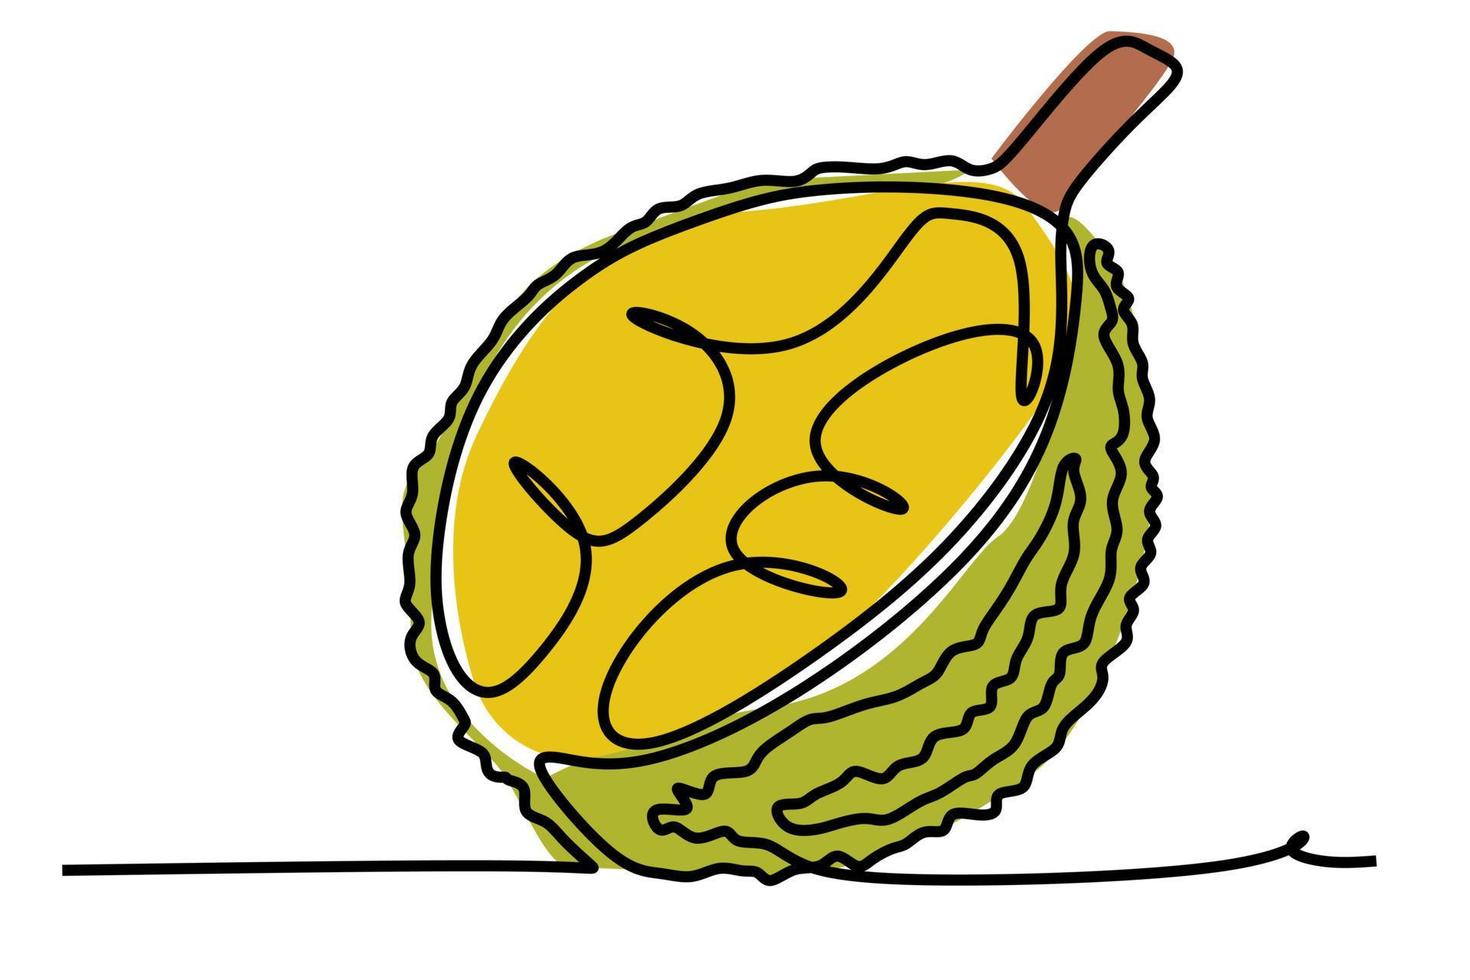 uno continuo linea disegno di giallo tropicale durian frutta. semplice piatto colore mano disegnato stile vettore illustrazione per naturale e salutare vivente concetto